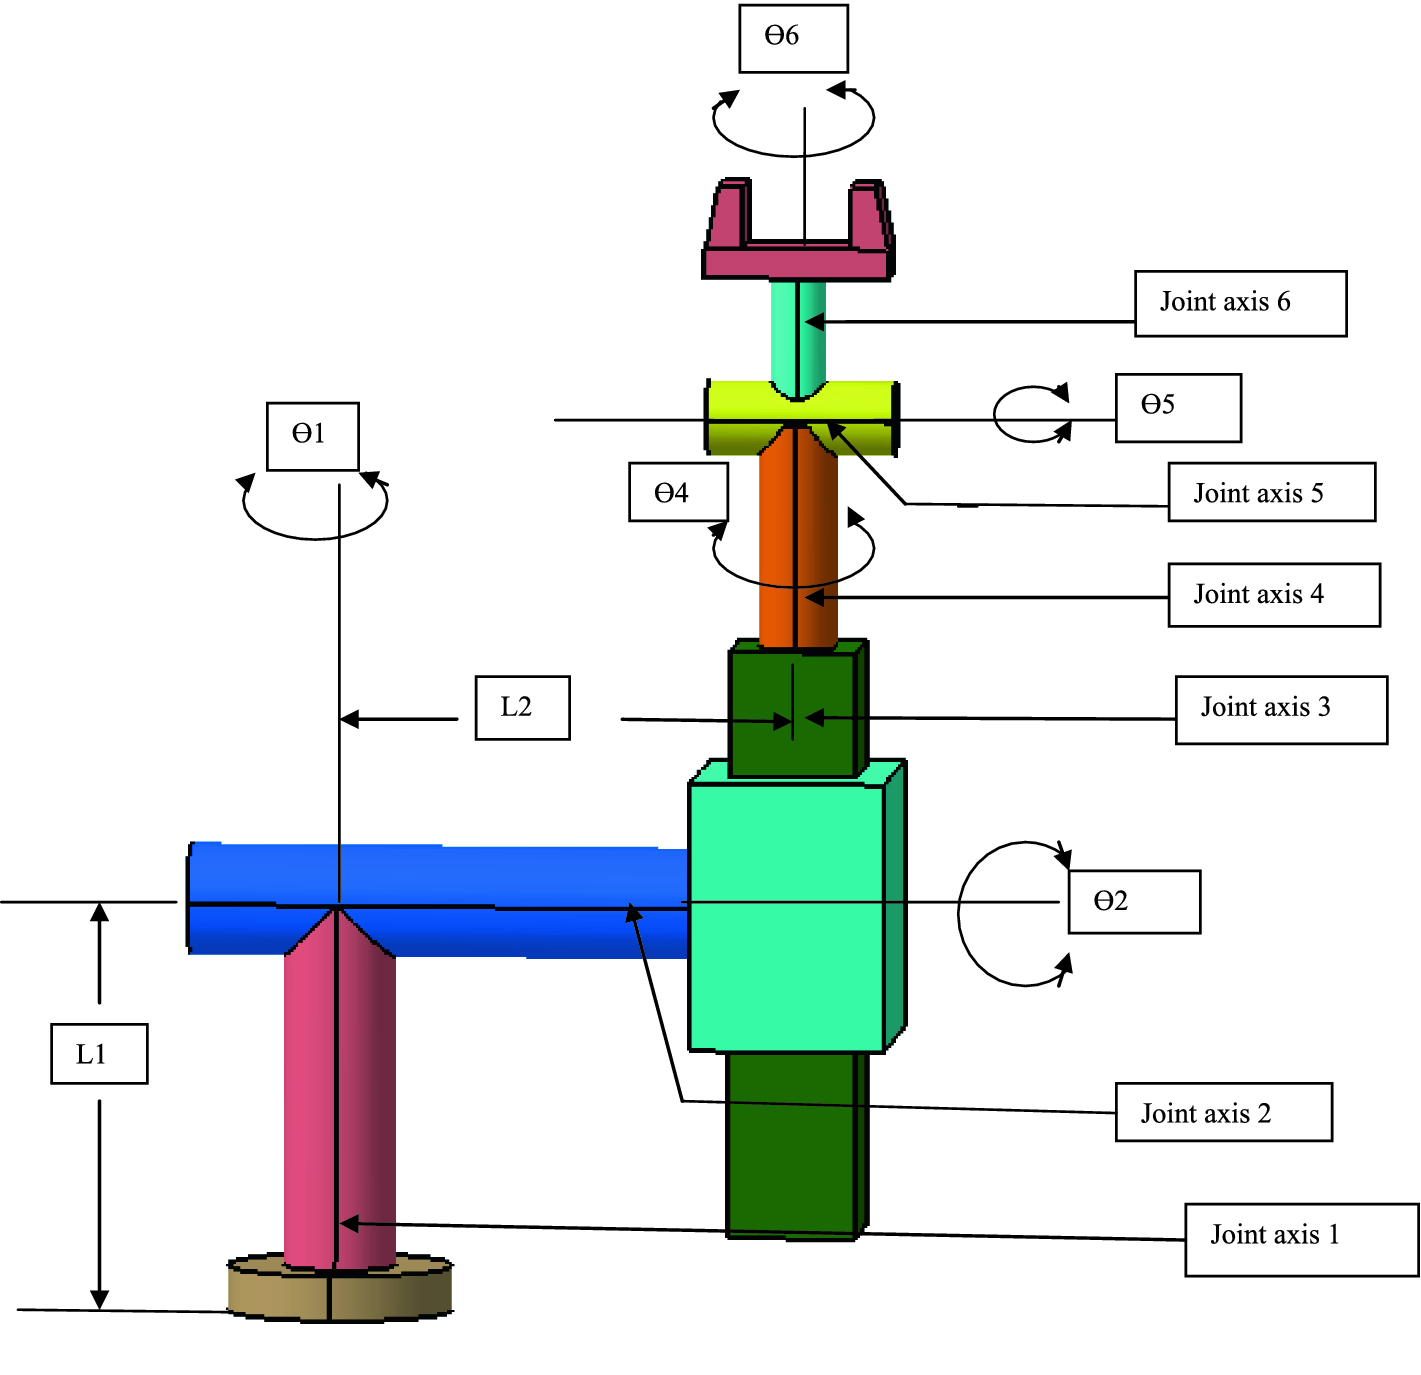 Kinematic Model Design of a 6 DOF Industrial Robot | SpringerLink